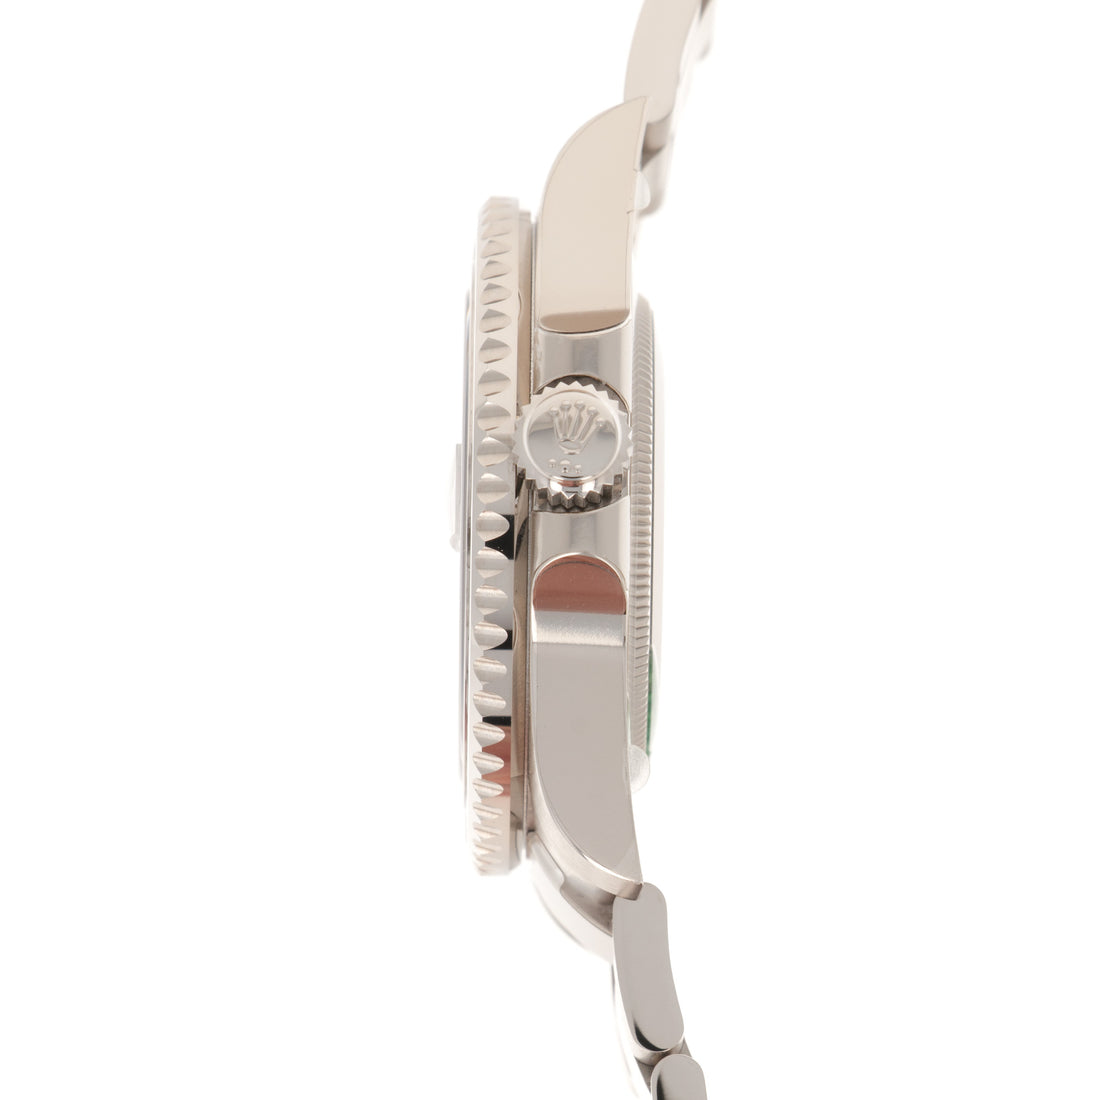 Rolex White Gold GMT-Master II Sapphire Watch Ref. 116749